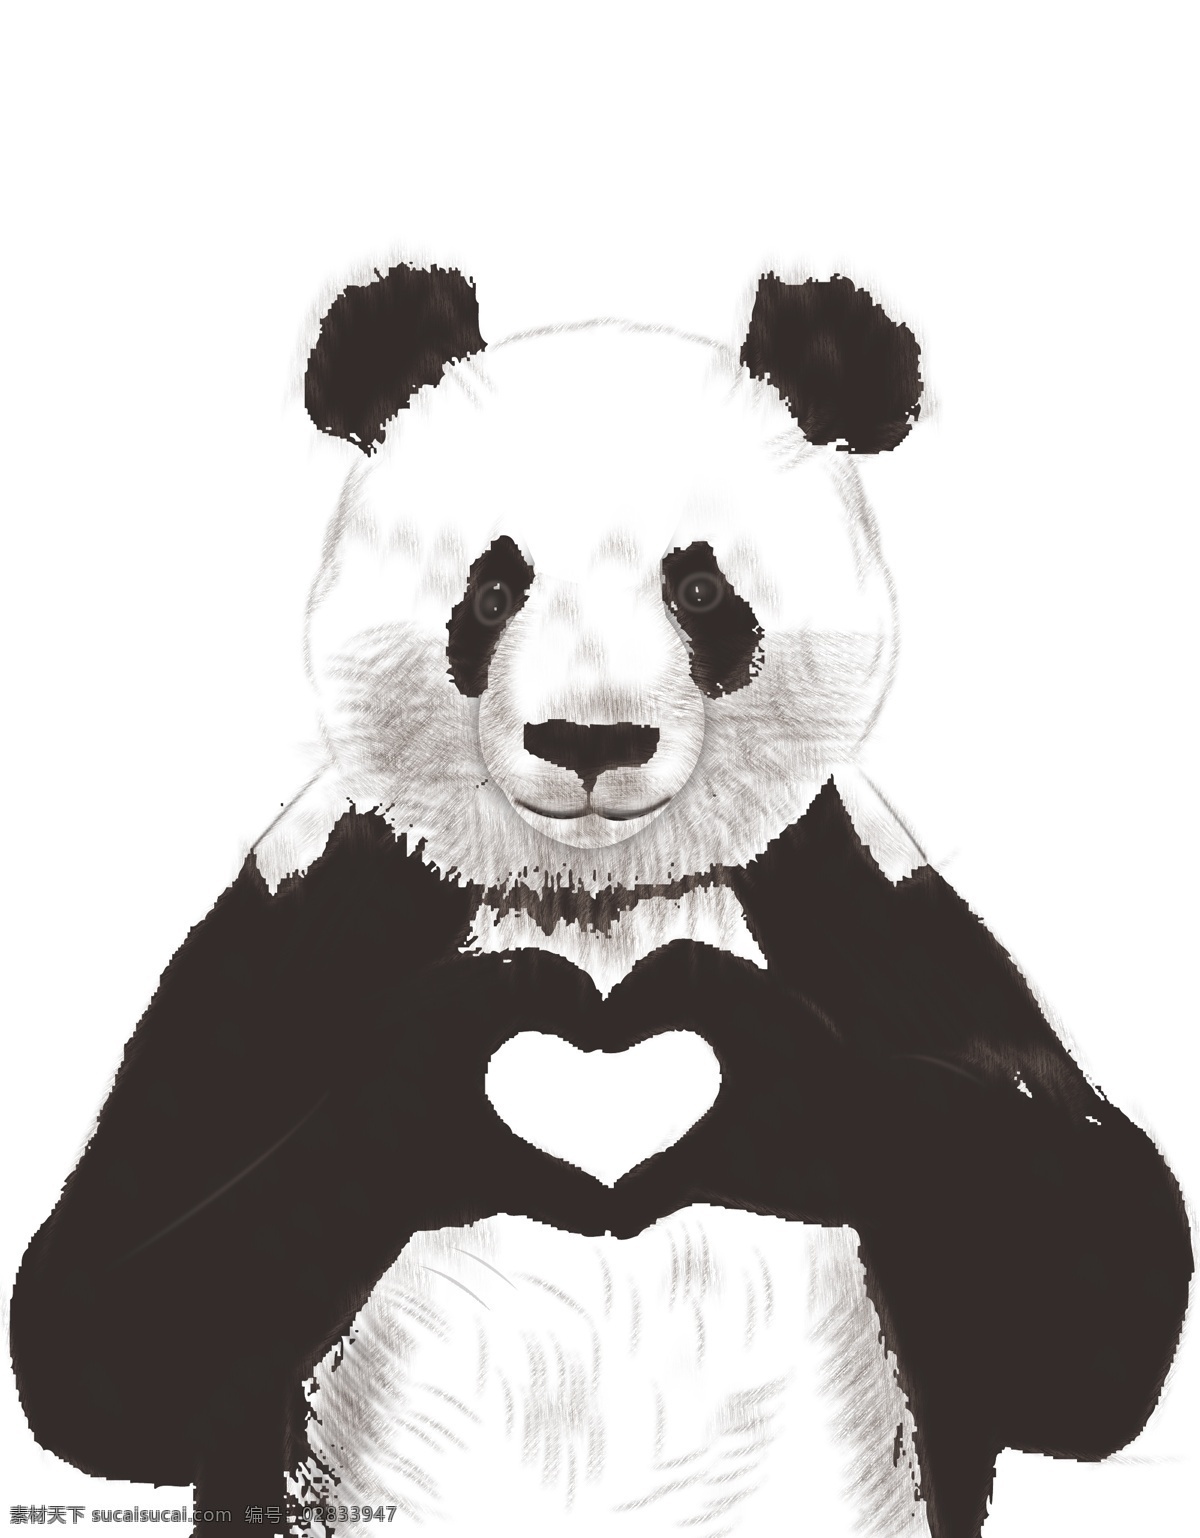 熊猫 爱心 卡通 矢量图 熊猫矢量图 爱心熊猫 ai矢量图 手绘 自然景观 矢量 卡通熊猫 非商出售图 卡通设计